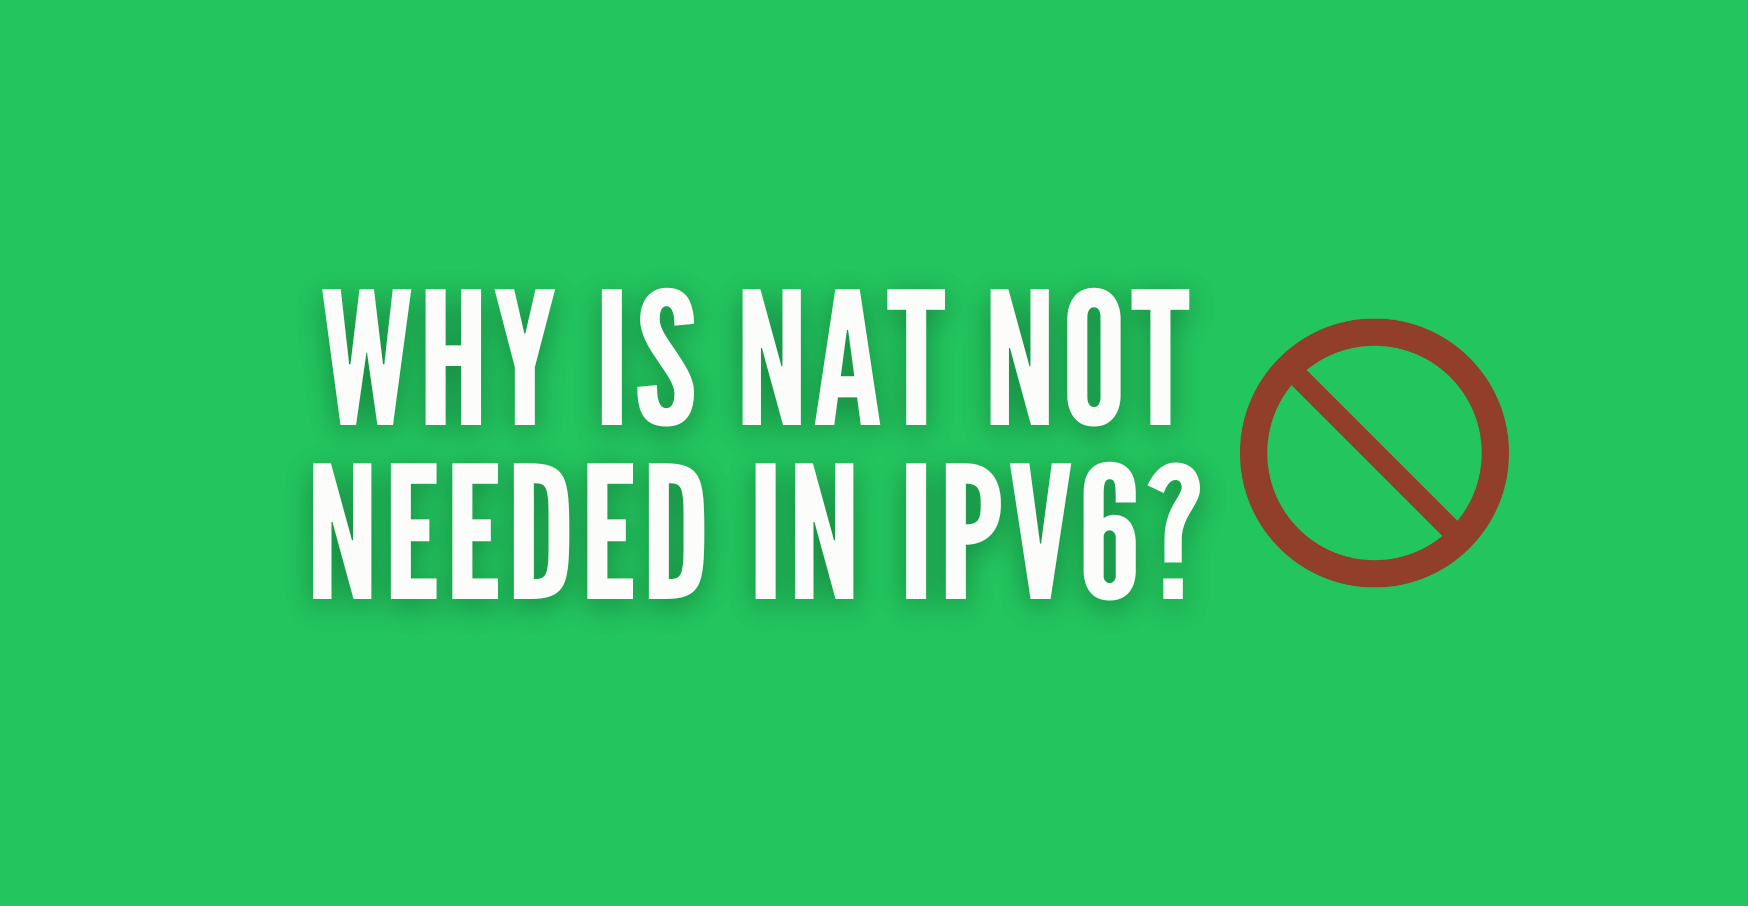 ¿Por qué no es necesario NAT en IPv6?